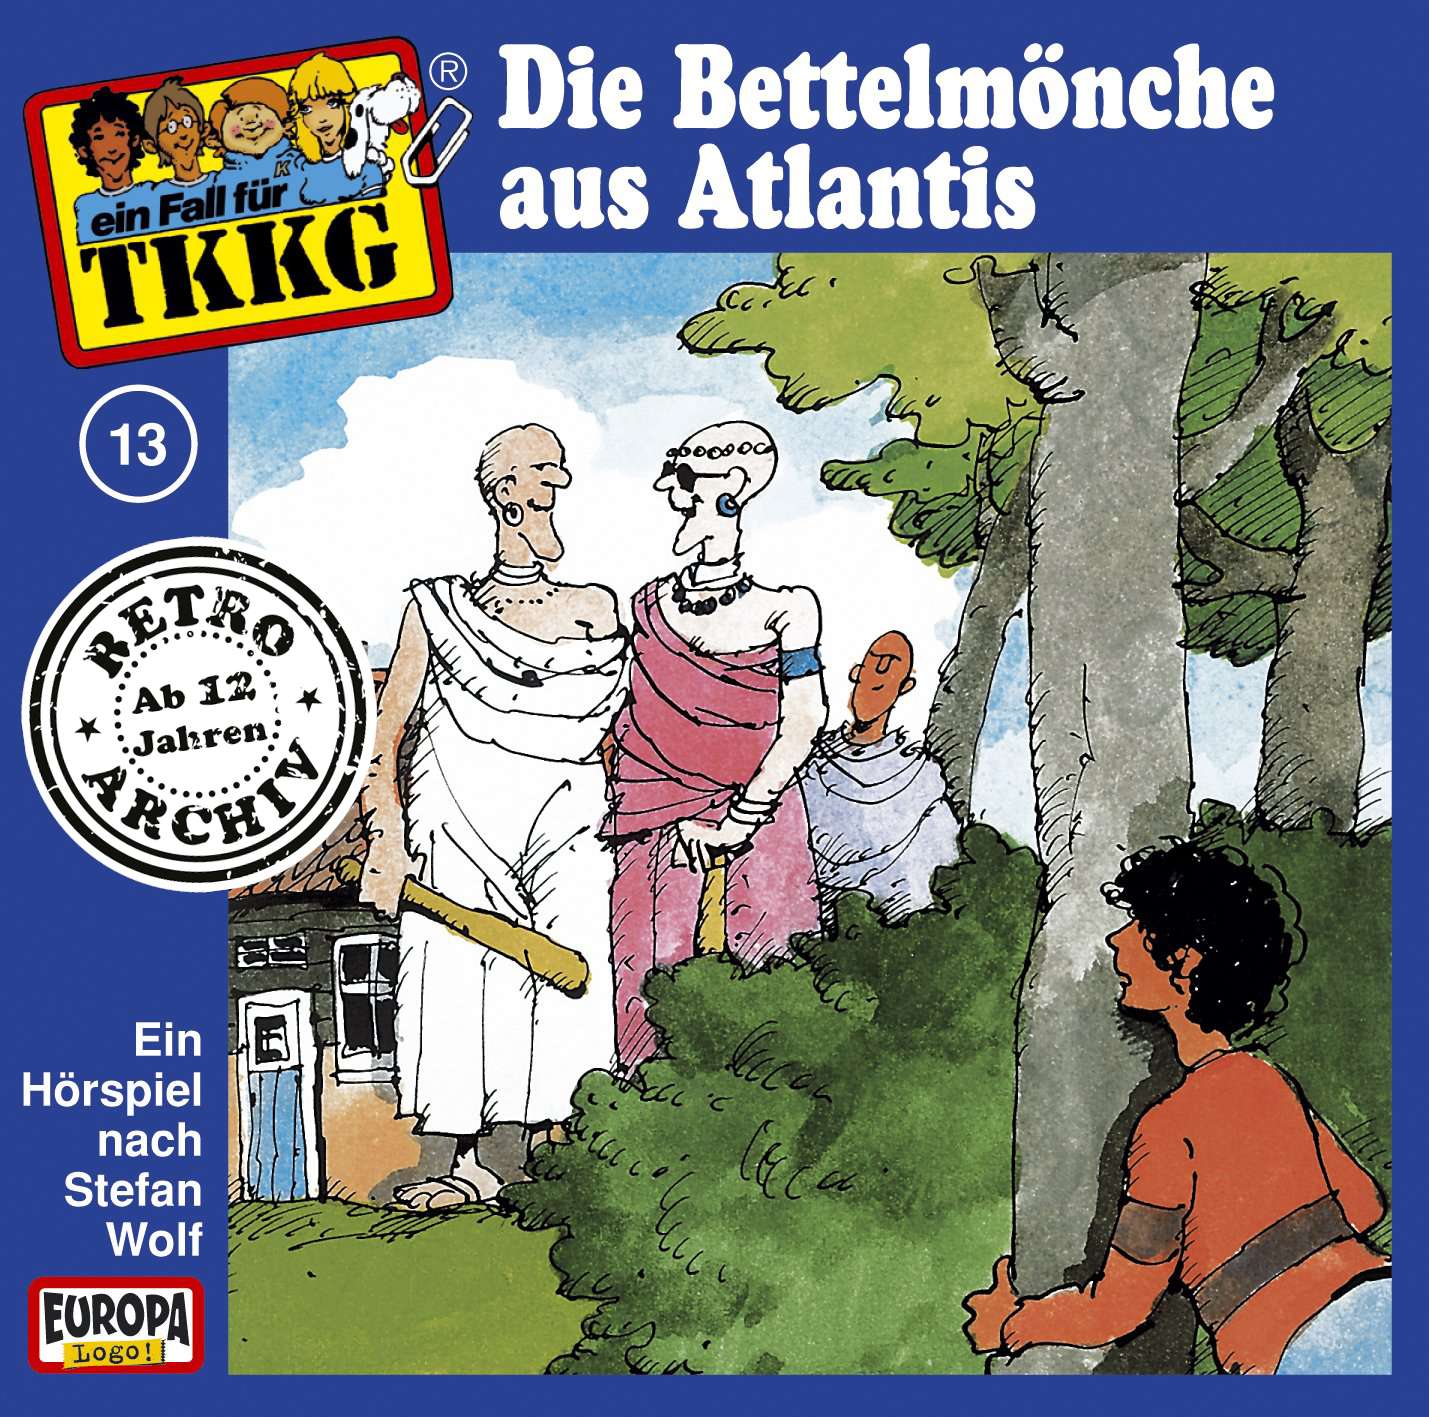 TKKG Retro-Archiv - Die Bettelmönche von Atlantis